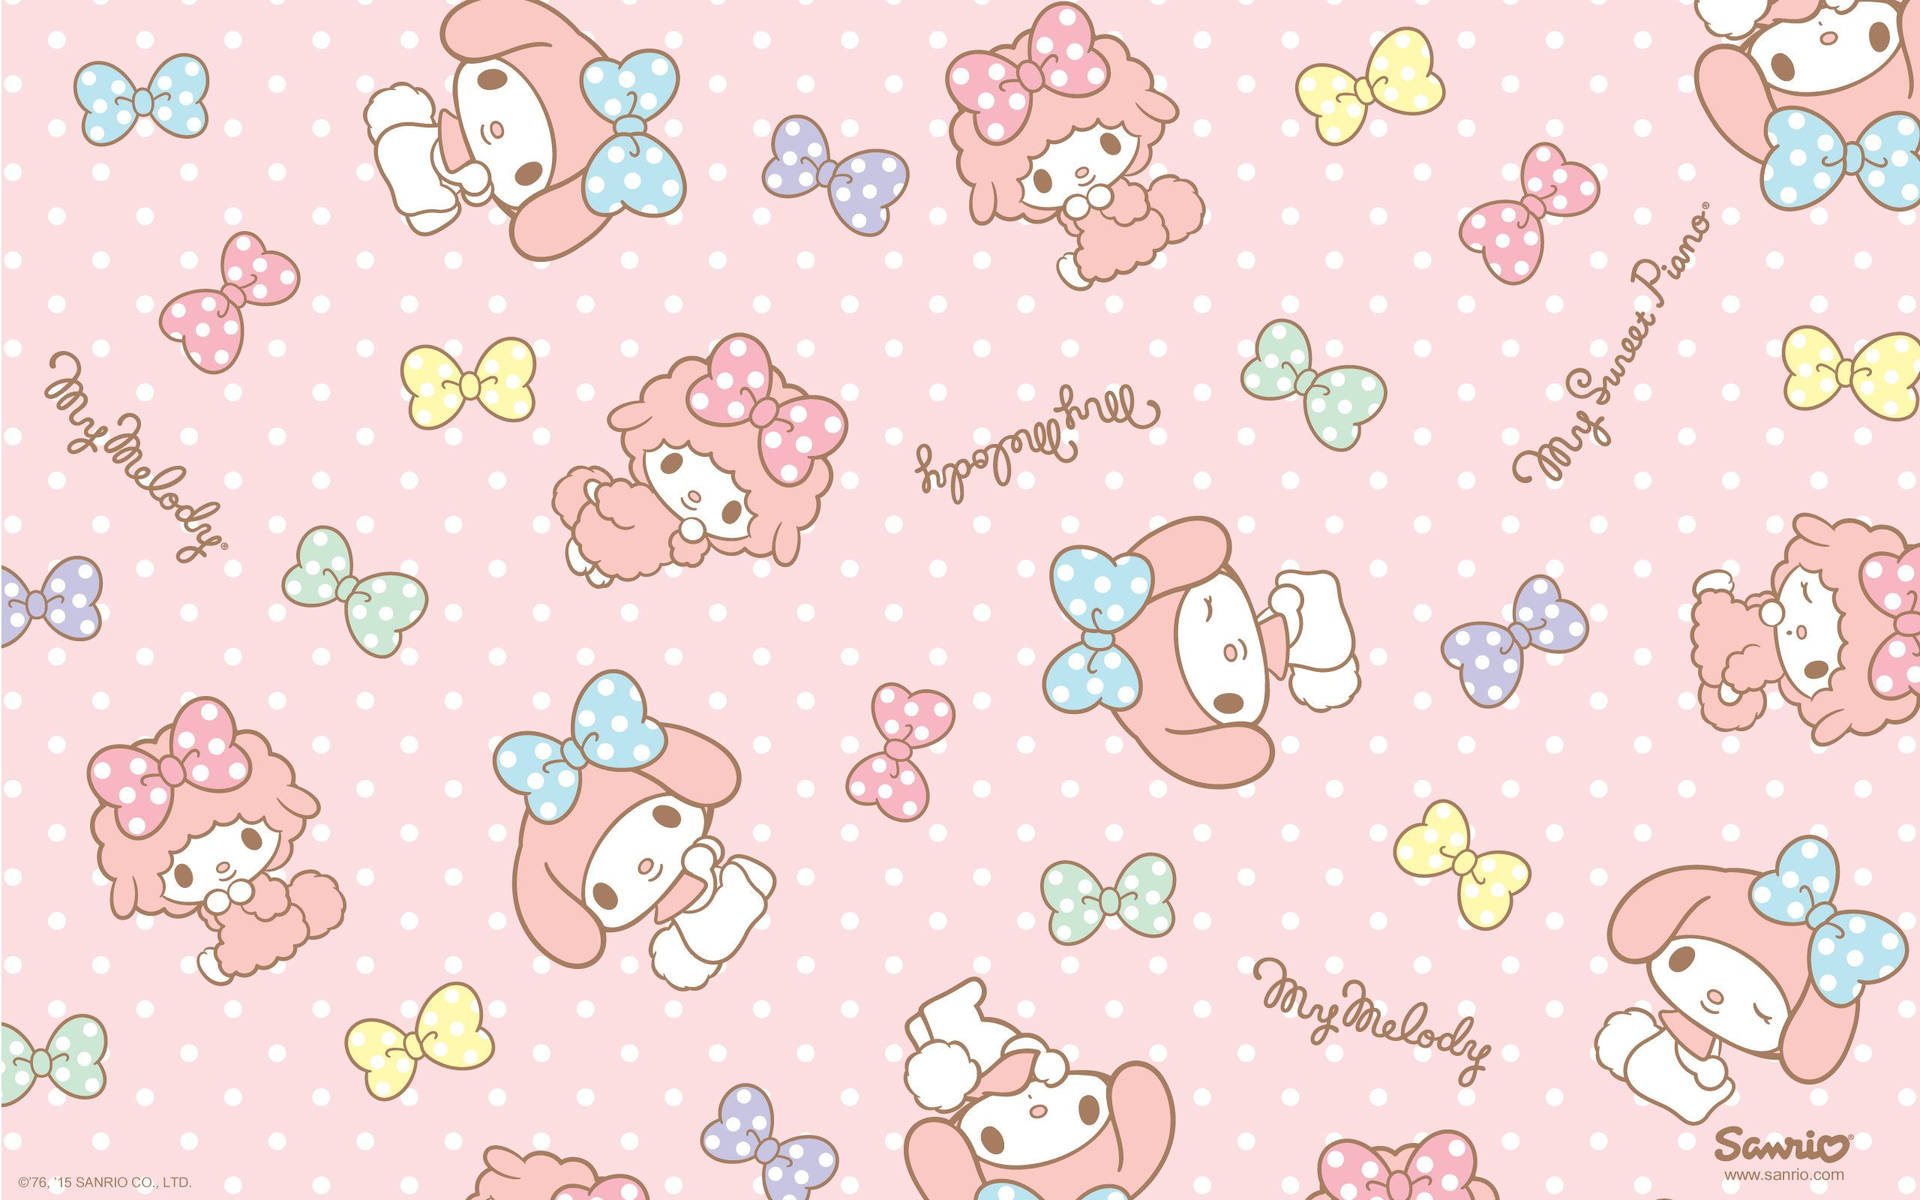 Sanrio là thương hiệu nổi tiếng với những nhân vật kawaii dễ thương như Hello Kitty hay My Melody. Đừng bỏ lỡ cơ hội tải miễn phí những hình nền Sanrio đáng yêu này để làm mới màn hình điện thoại của mình!